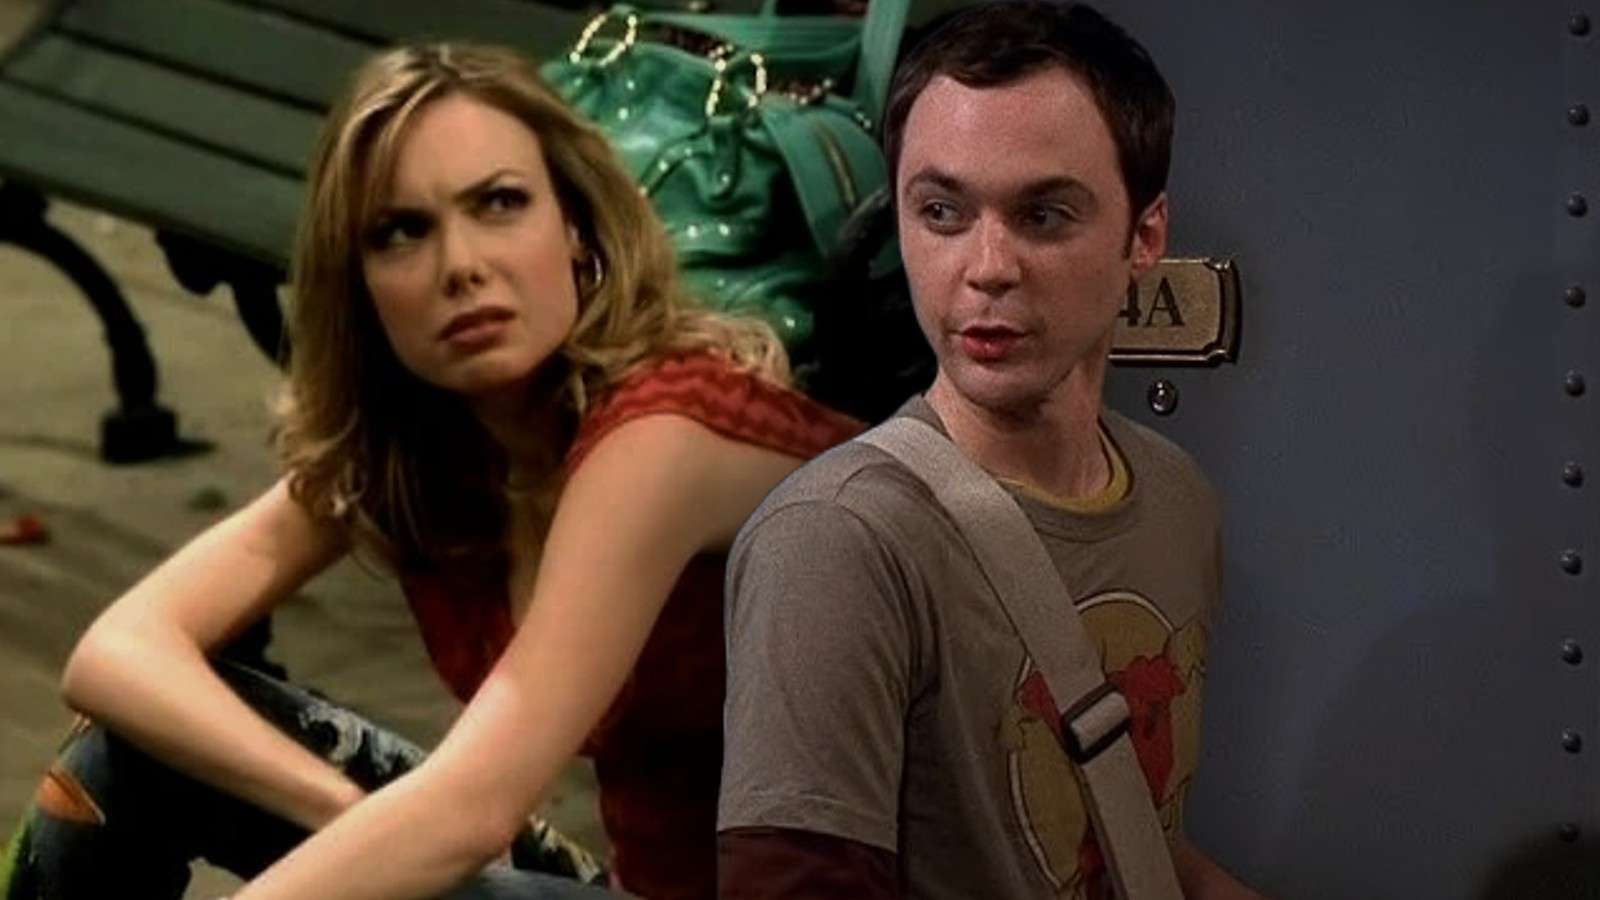 Amanda Walsh as Katie in the unaired Big Bang Theory pilot and Sheldon